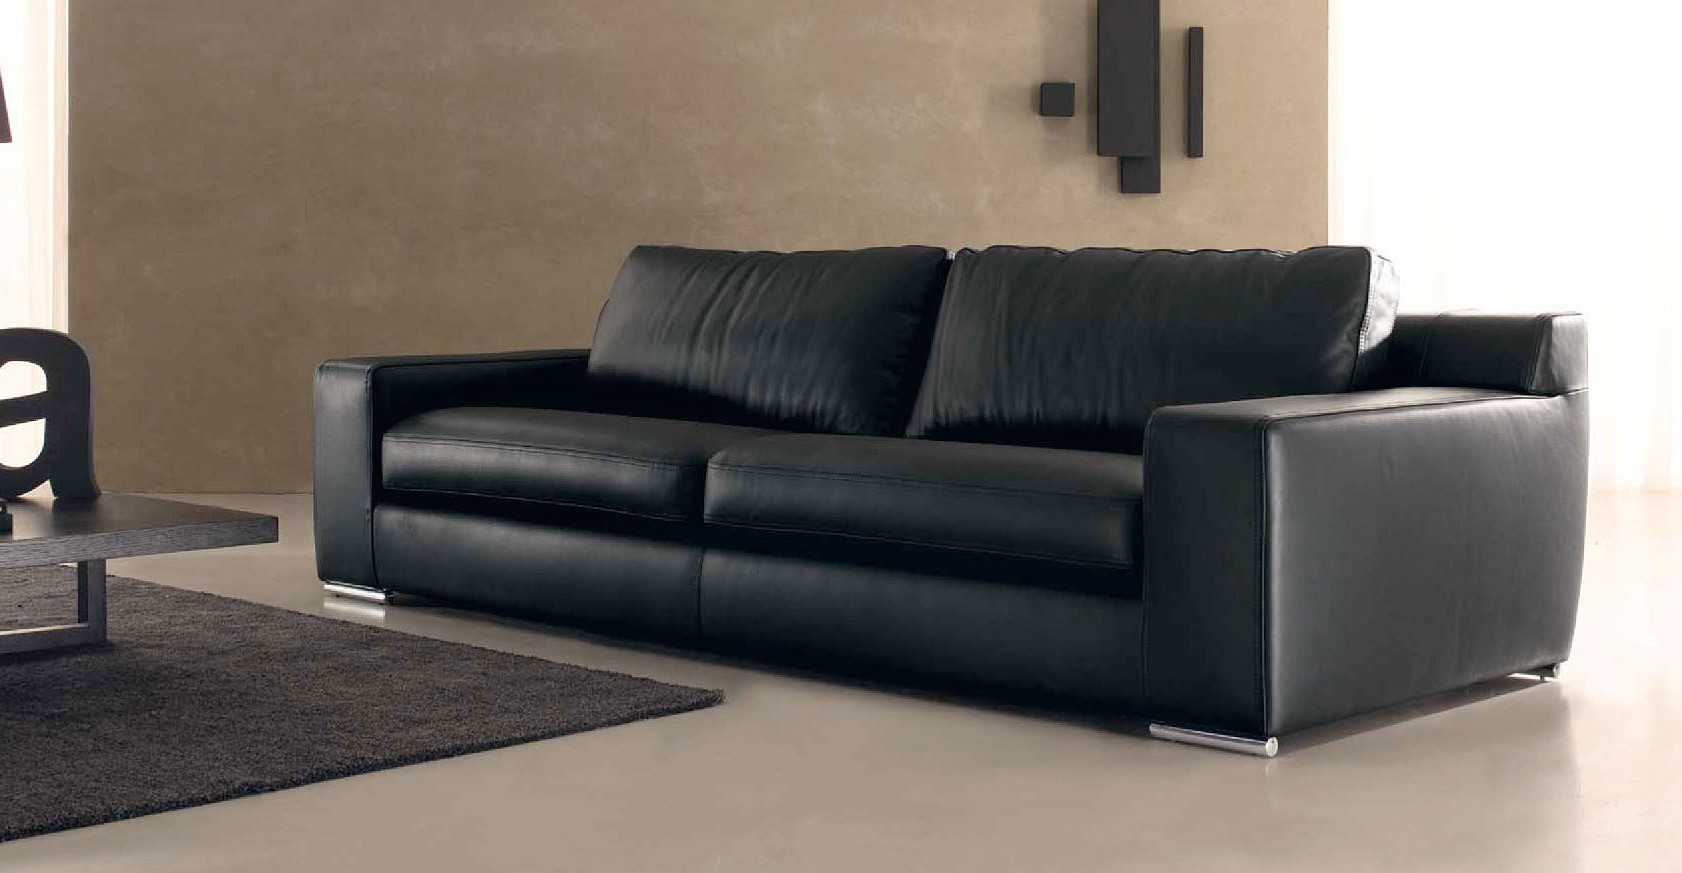 Черный диван из кожзама с металлическими ножками идеально подойдет под современный интерьер